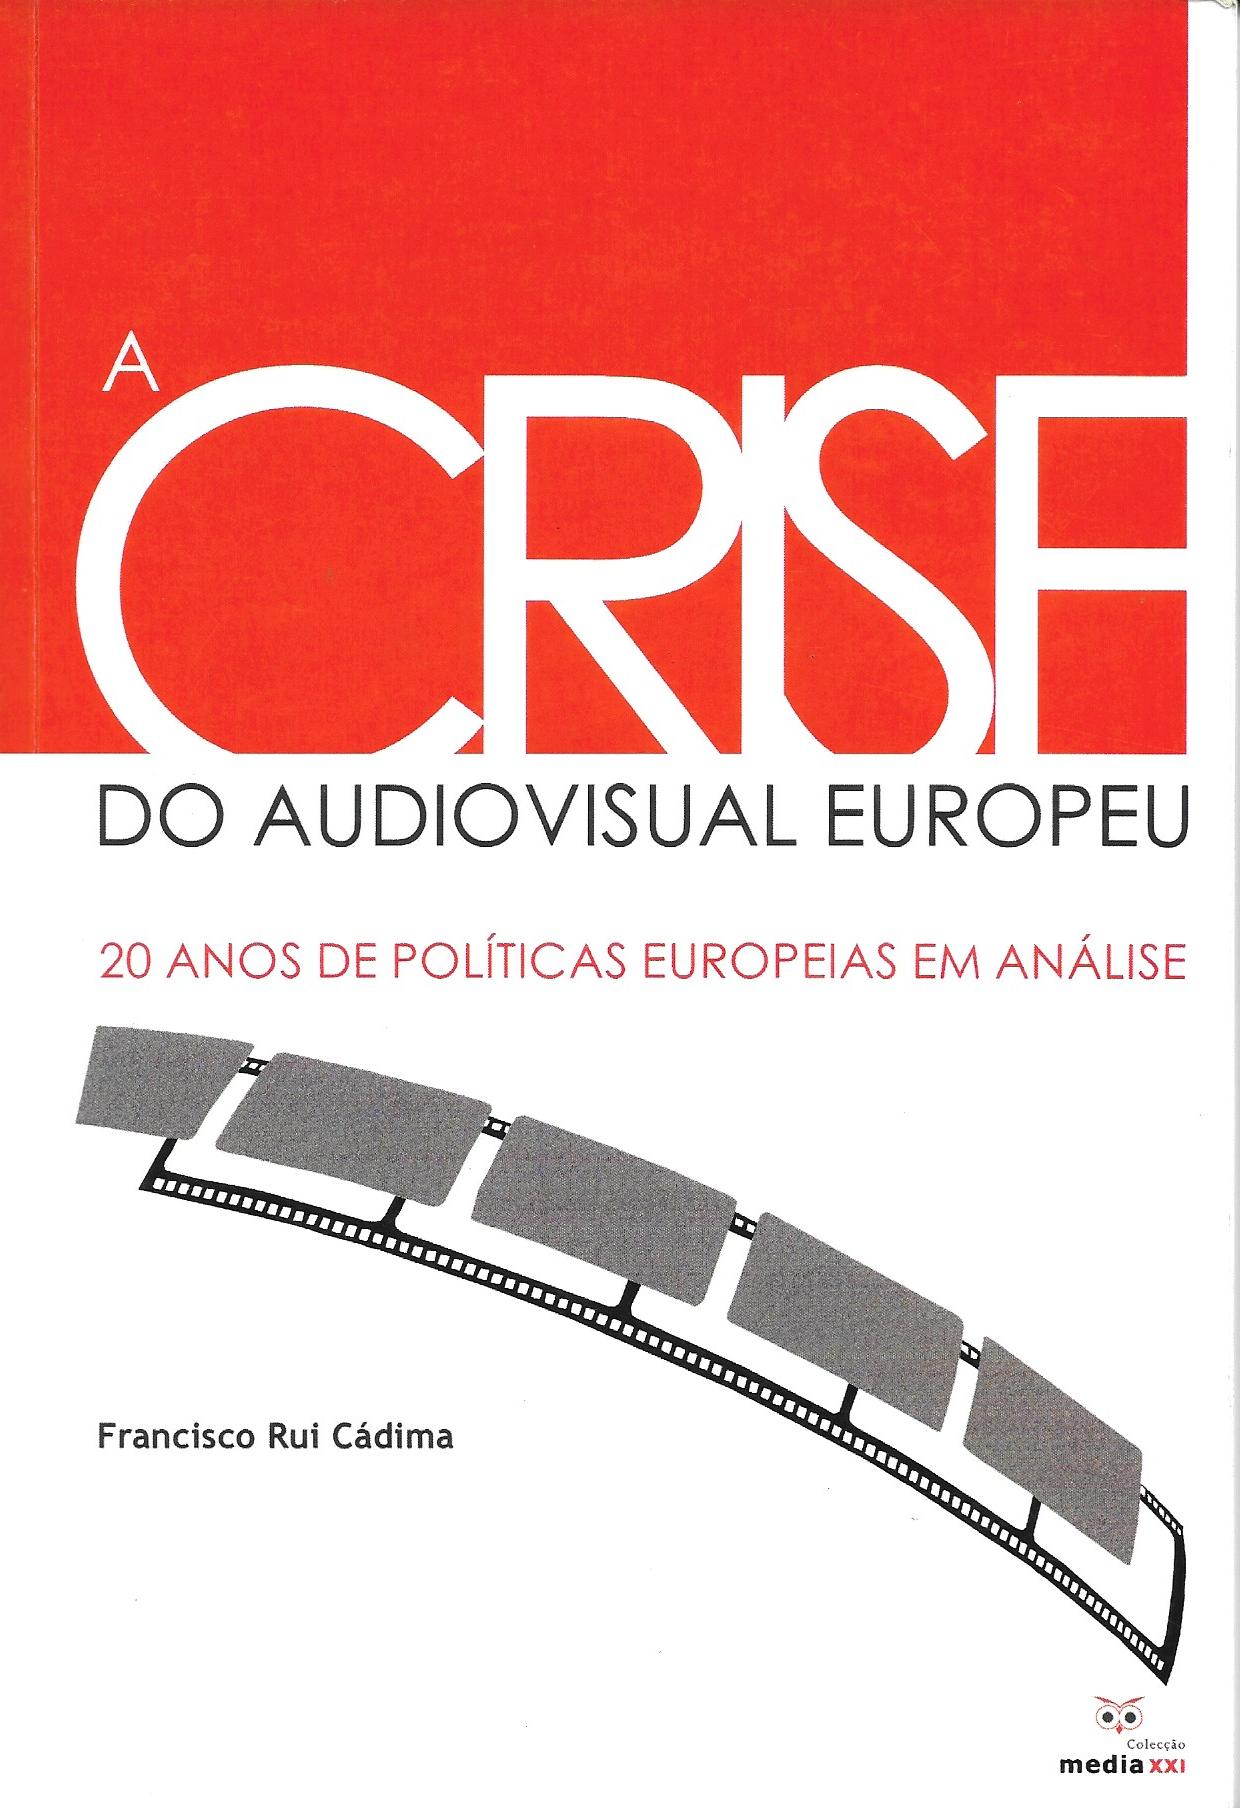 A Crise do Audiovisual Europeu - 20 Anos de Políticas Europeias em Análise